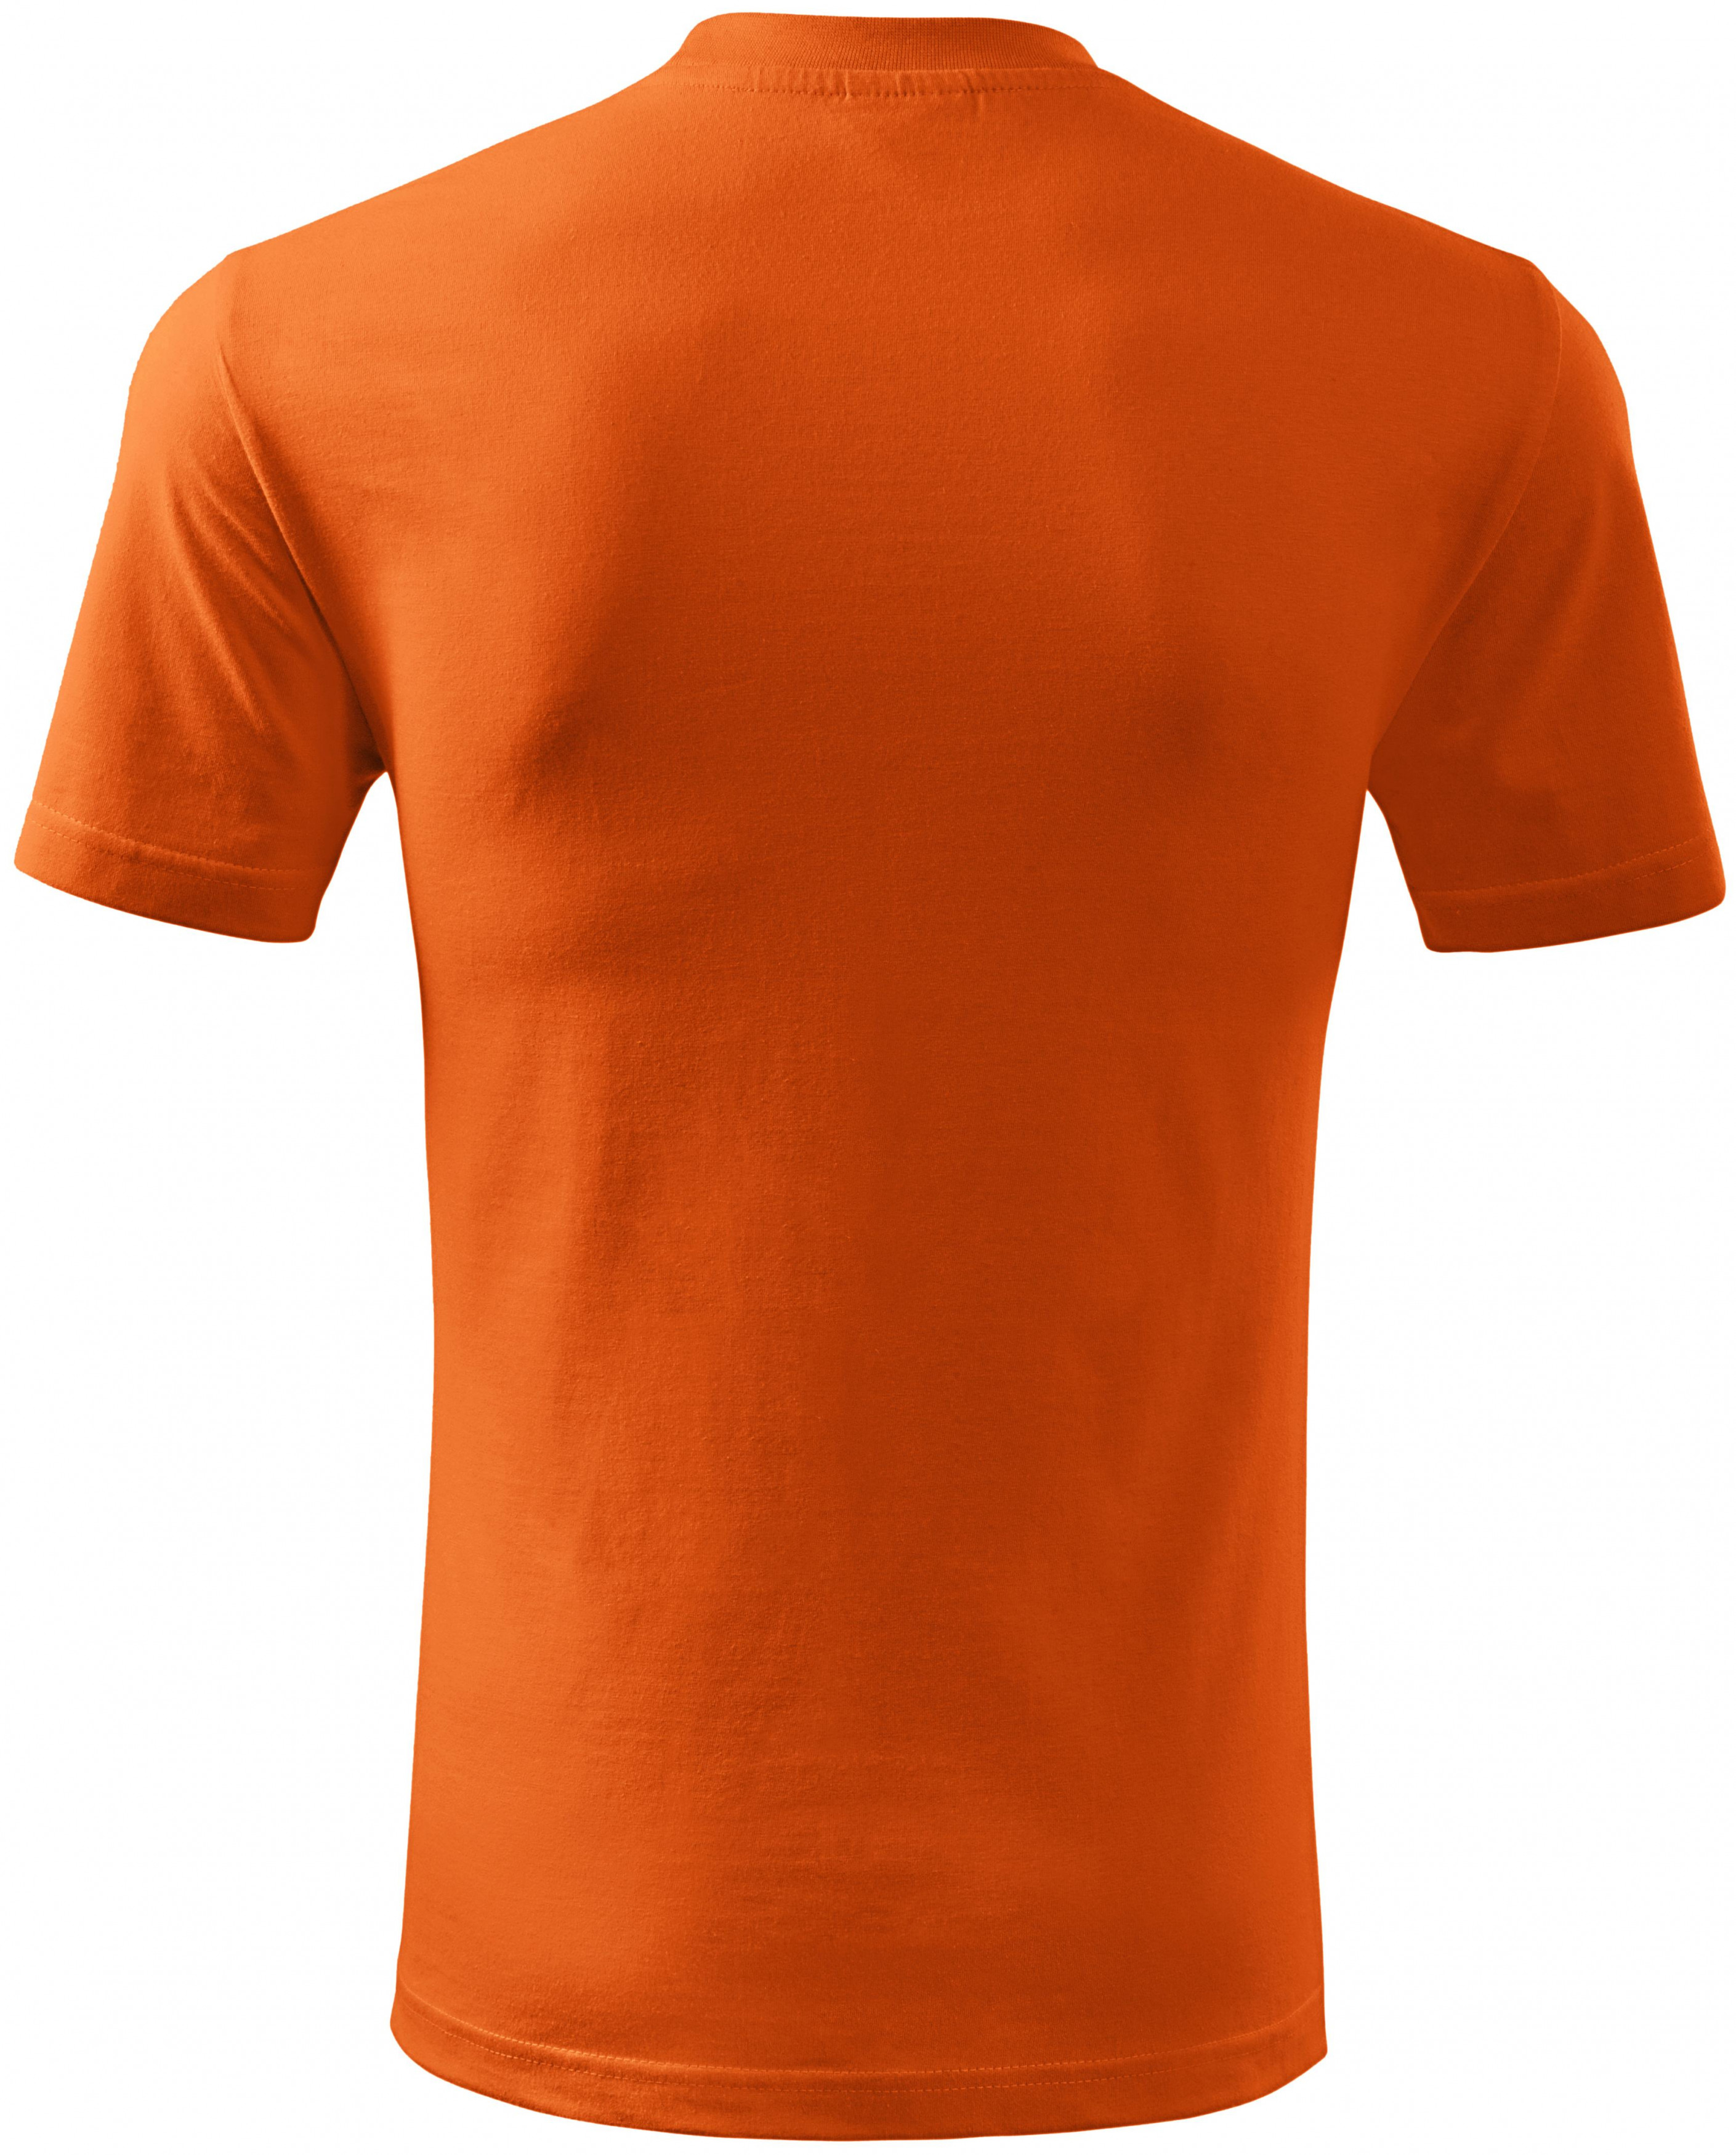 Tričko klasické, oranžová, M